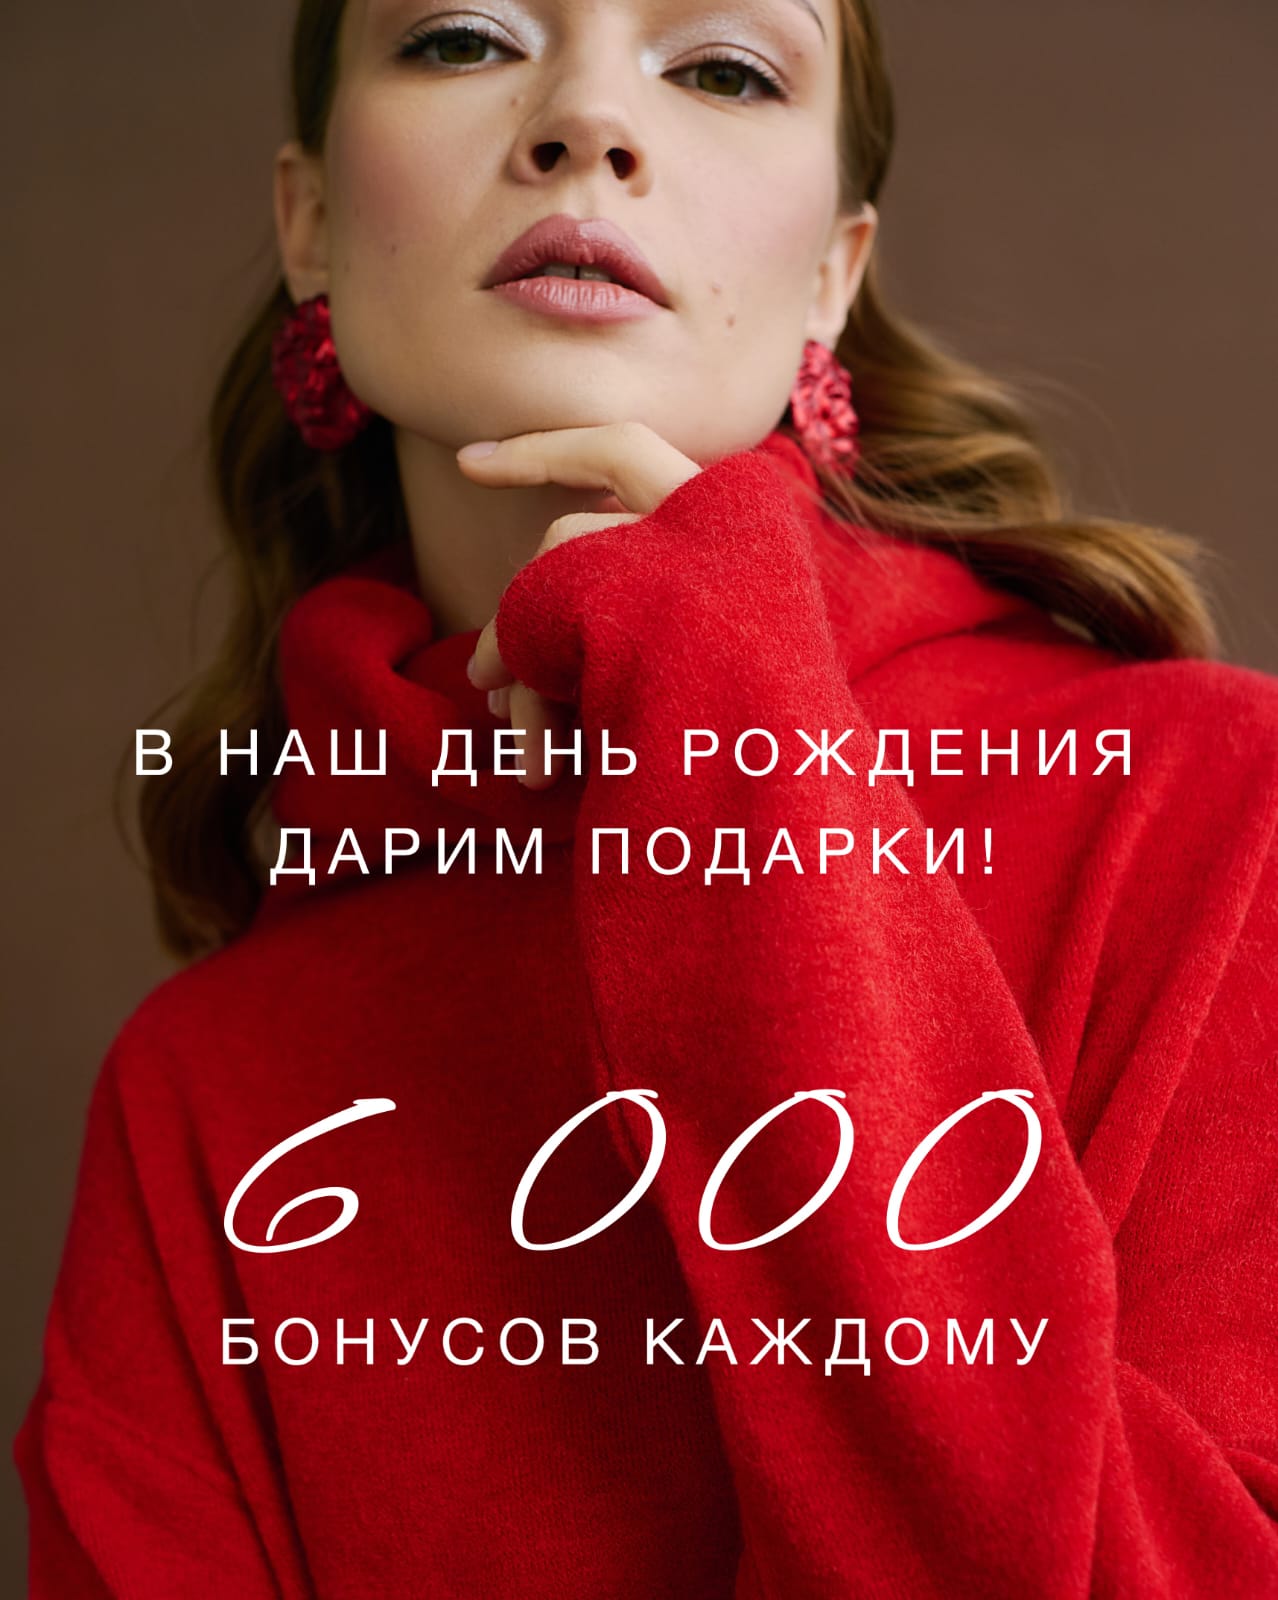 ДАРИМ 6000 БОНУСОВ